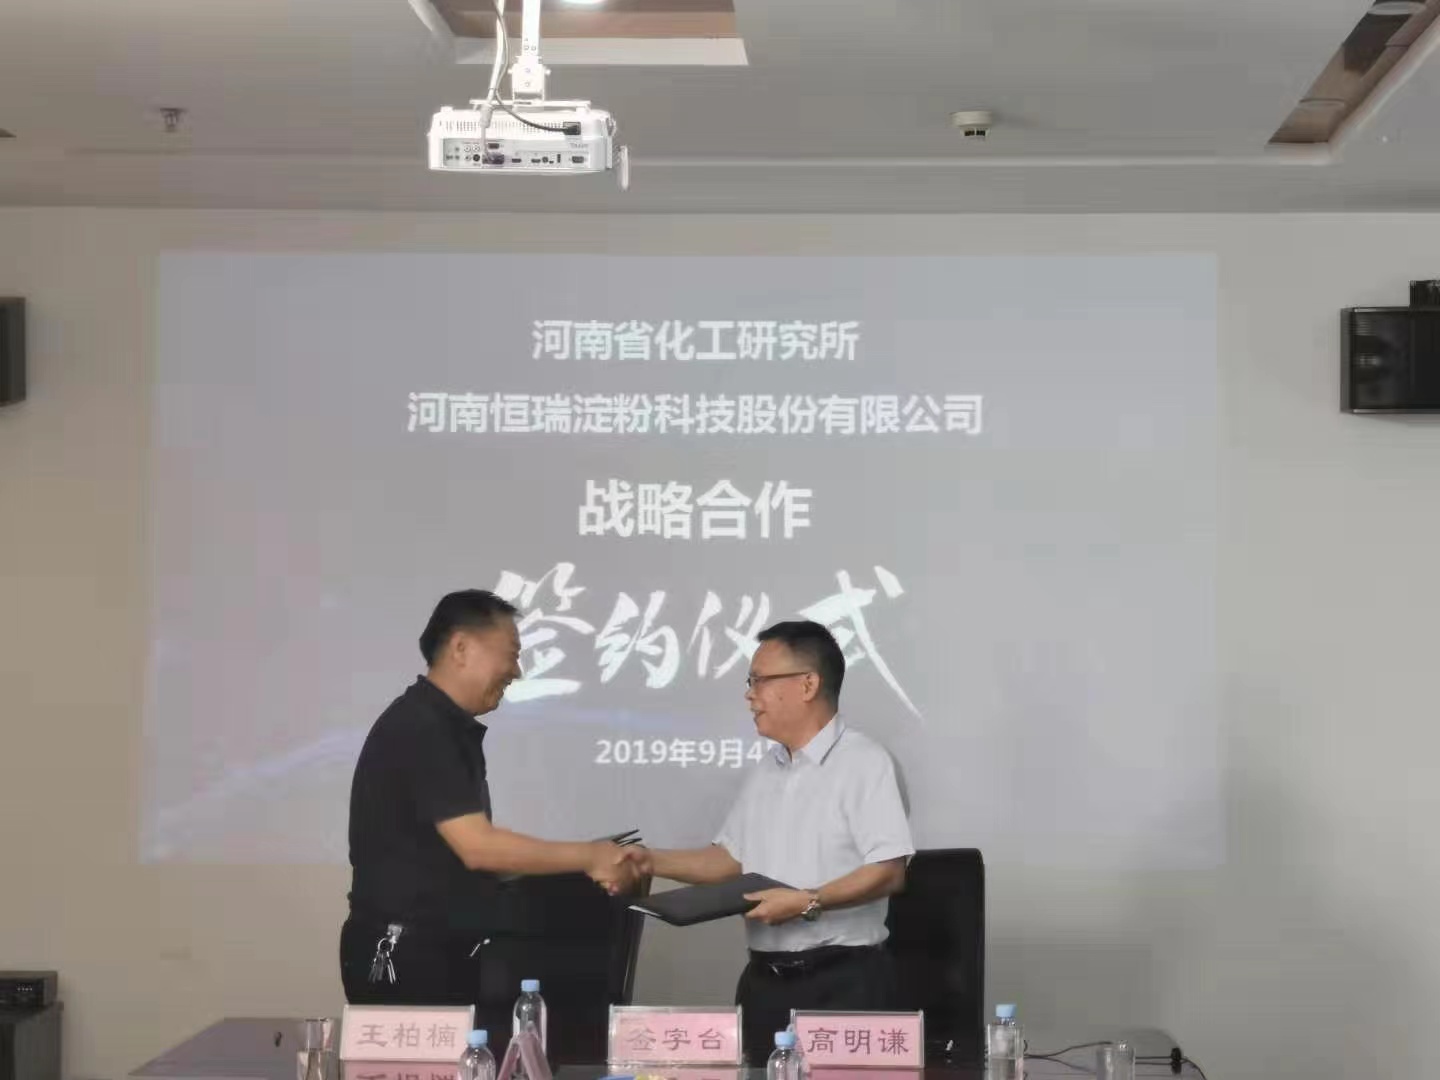 化工所与河南恒瑞淀粉科技股份有限公司正式签署战略合作协议